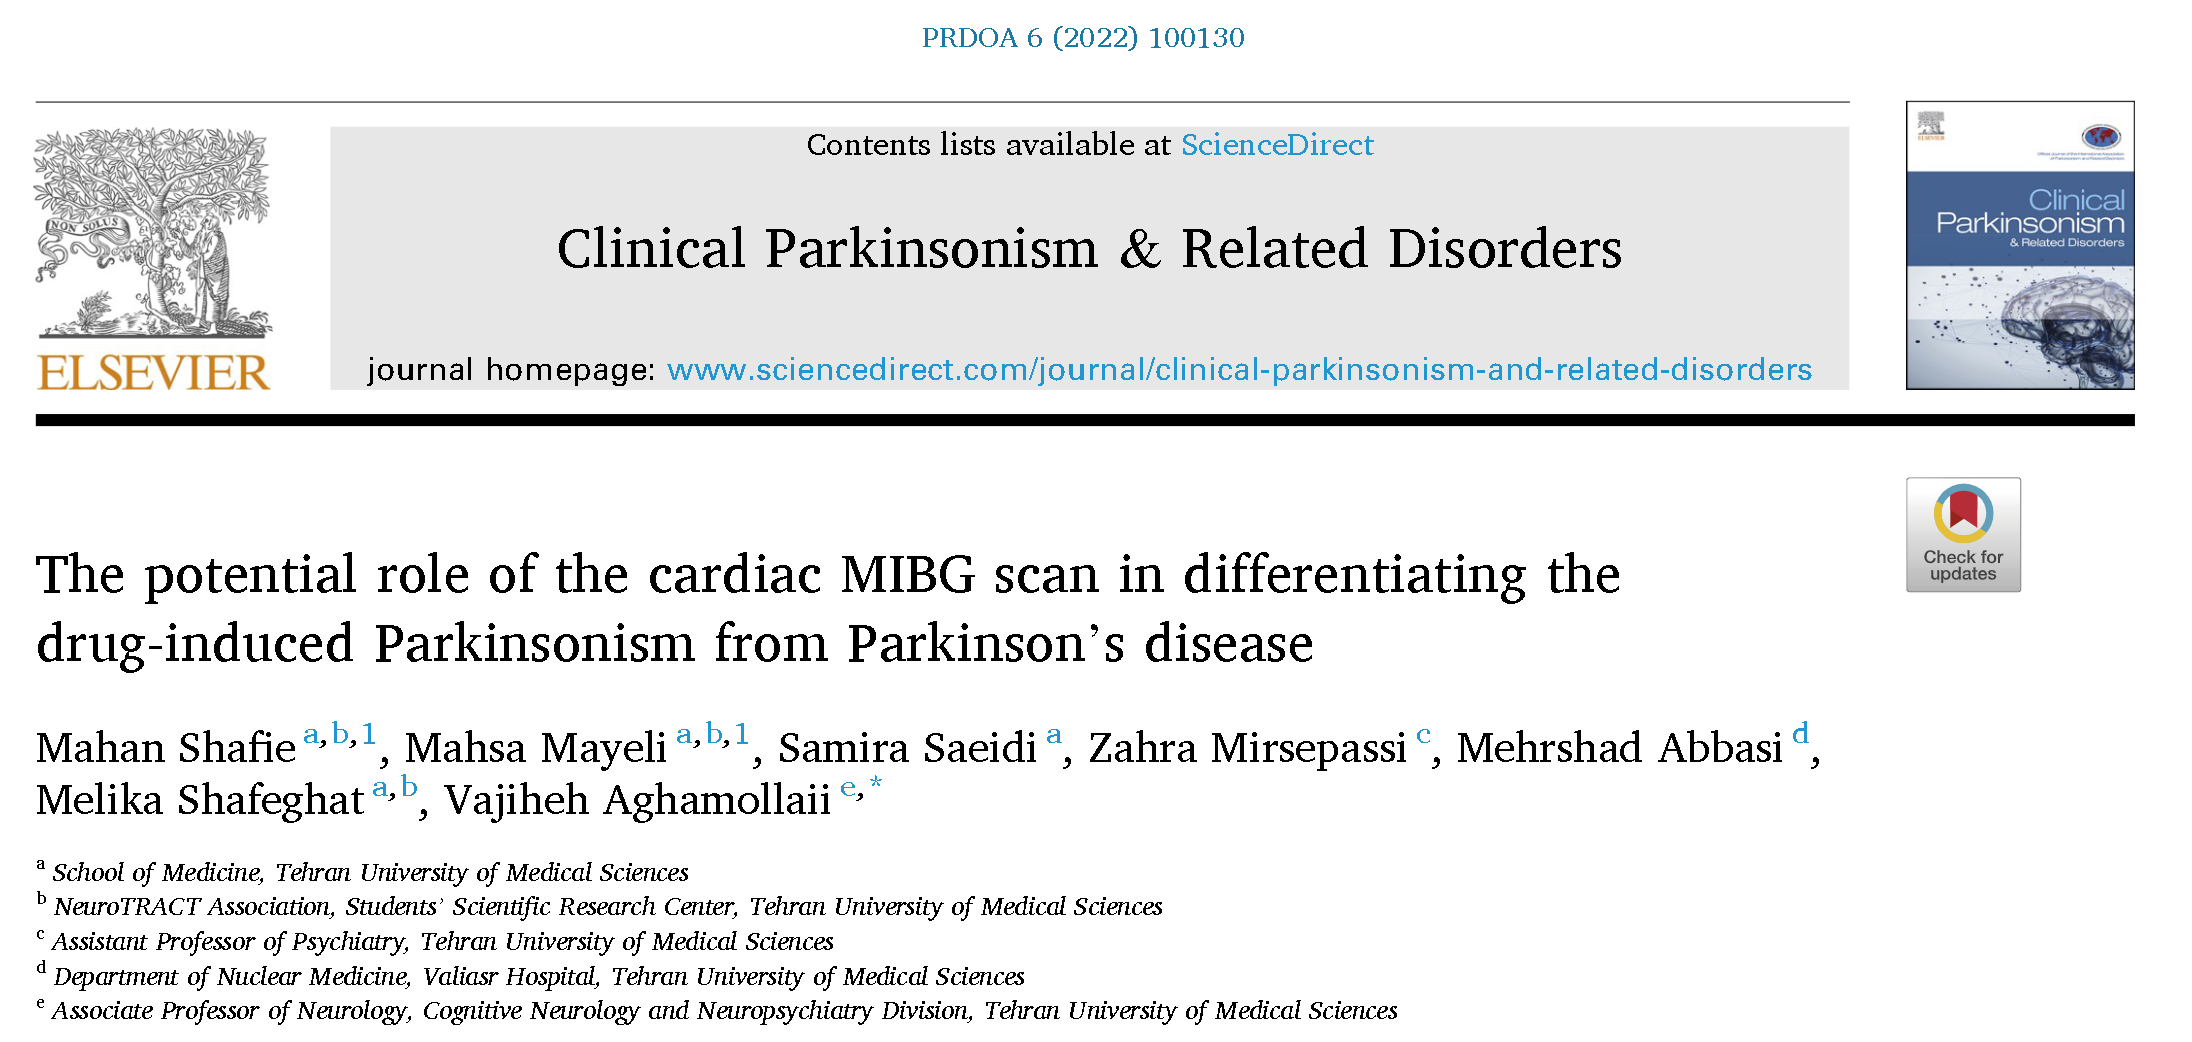 薬剤性パーキンソニズムとパーキンソン病の鑑別におけるMIBG心筋シンチグラフィーの役割